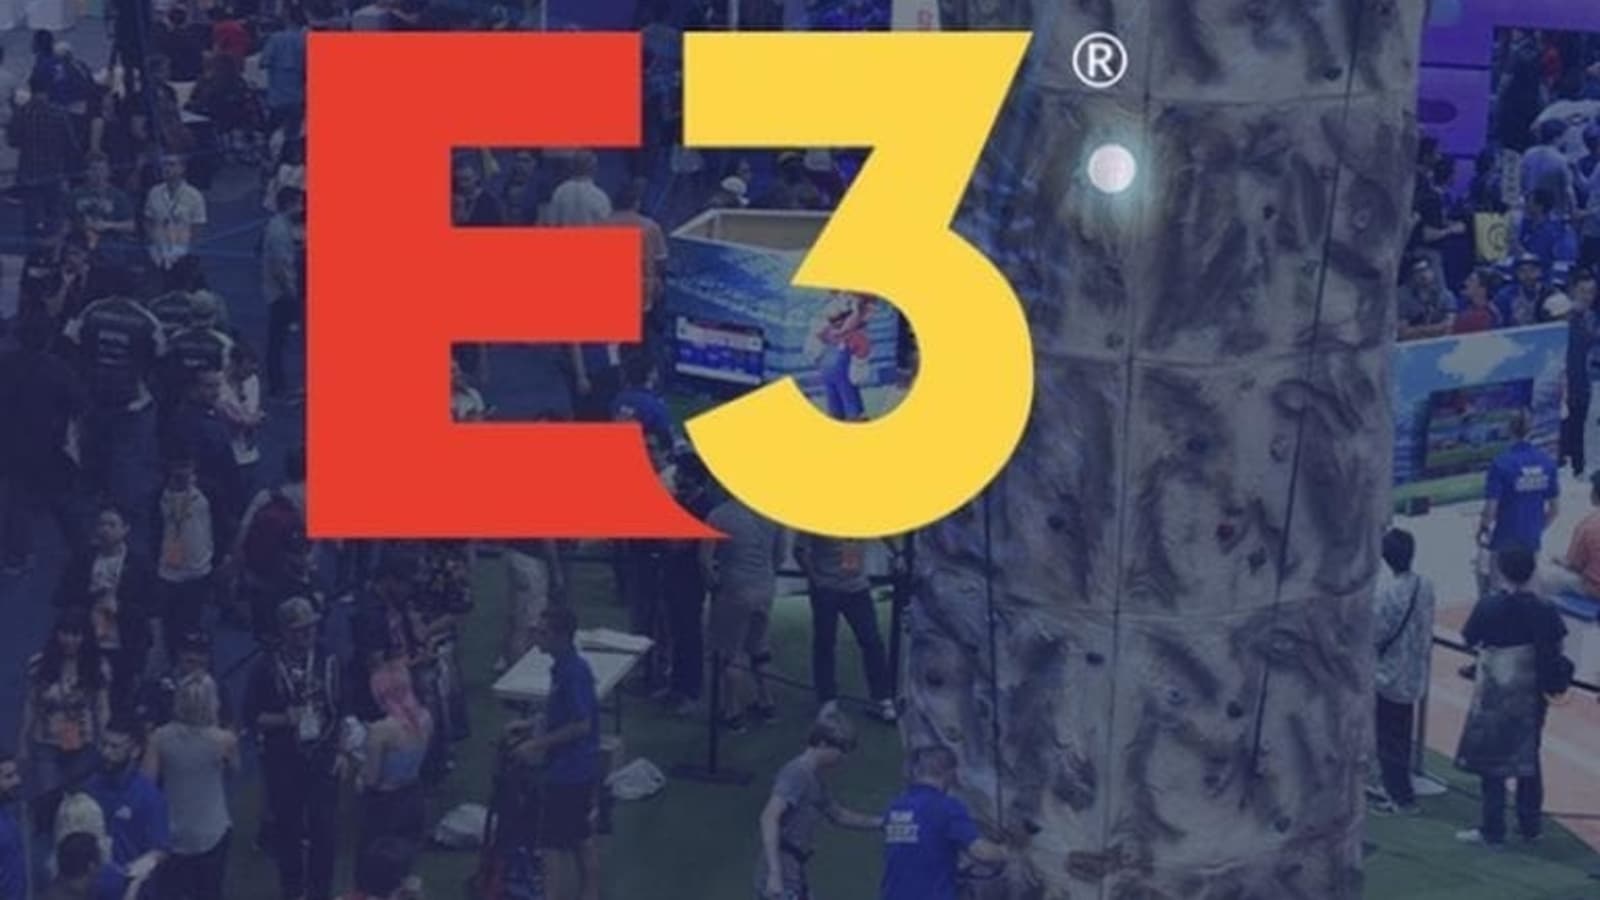 Calendario del E3 2021, registro: ¡Prepárate para la diversión y la emoción!  Nintendo, Xbox, Ubisoft, listos para agregar a la acción